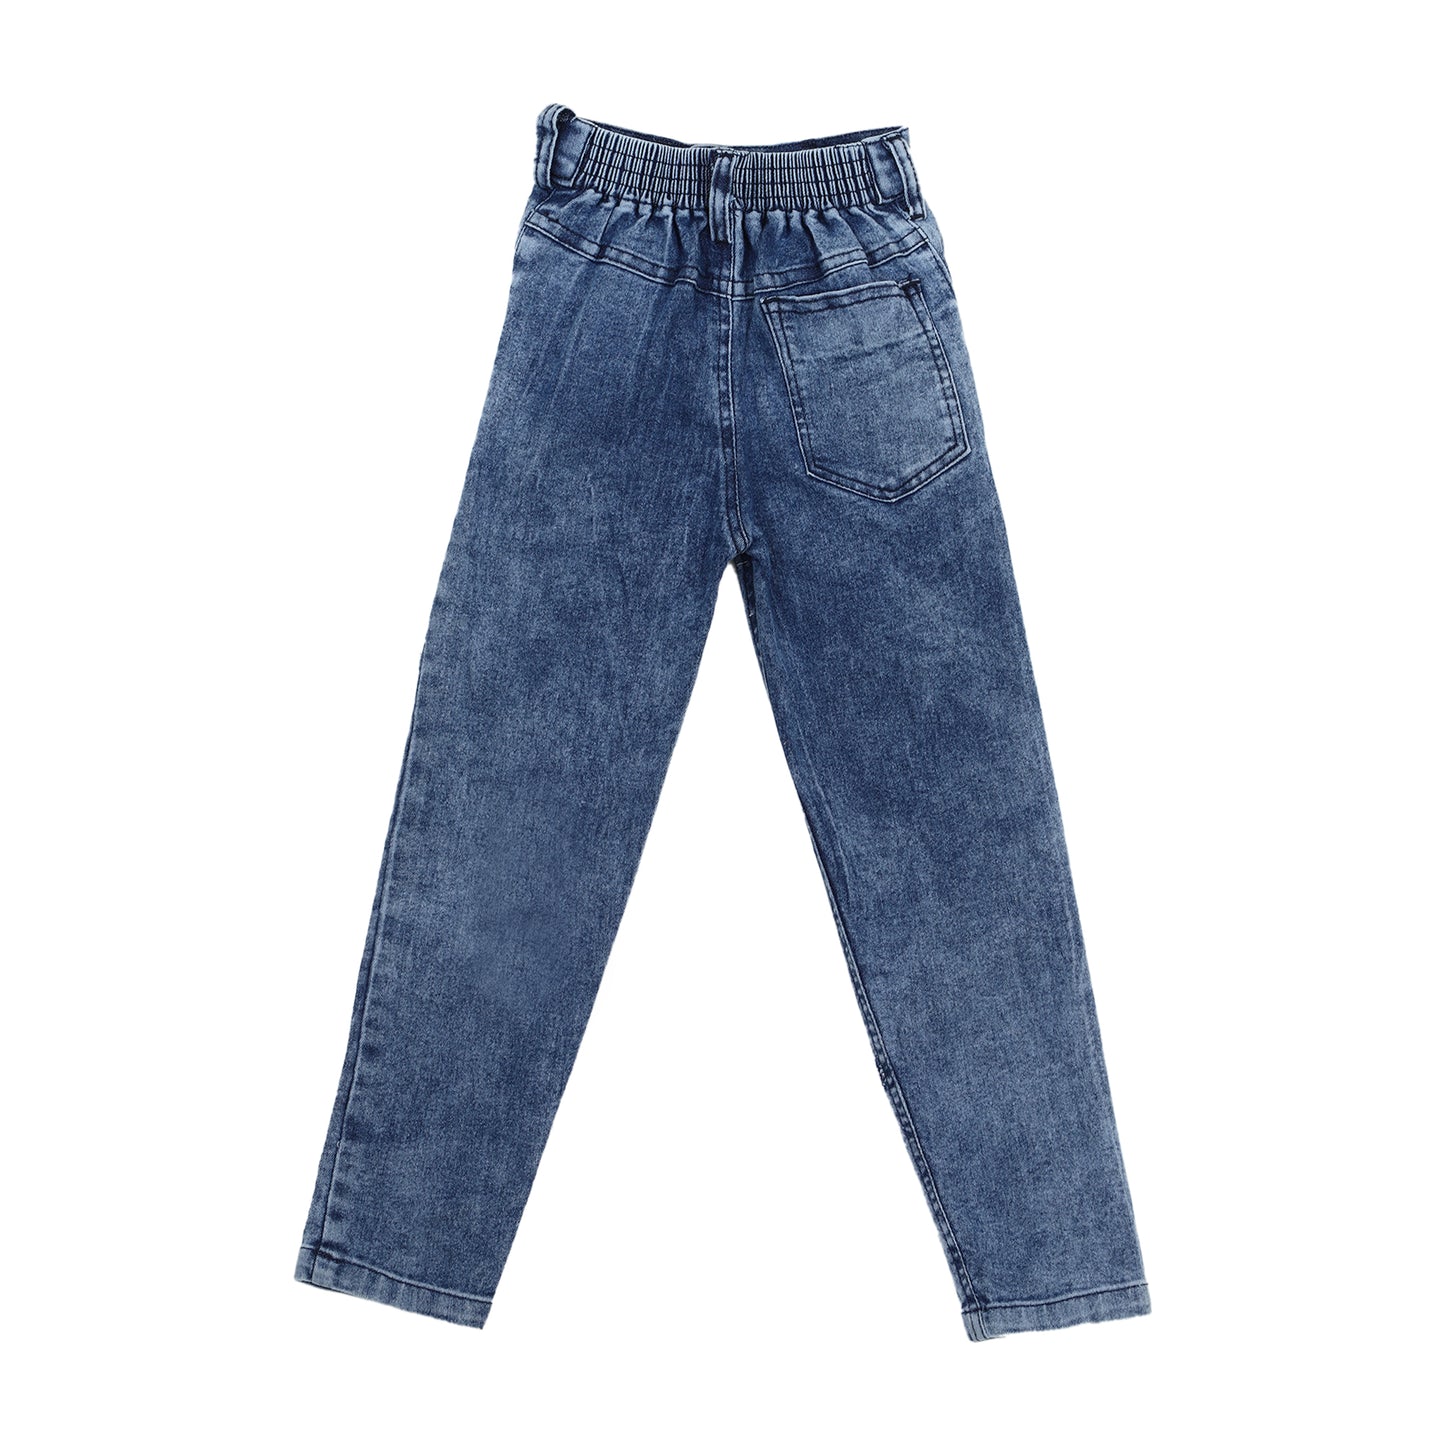 Denim Jeans for Boys - 1